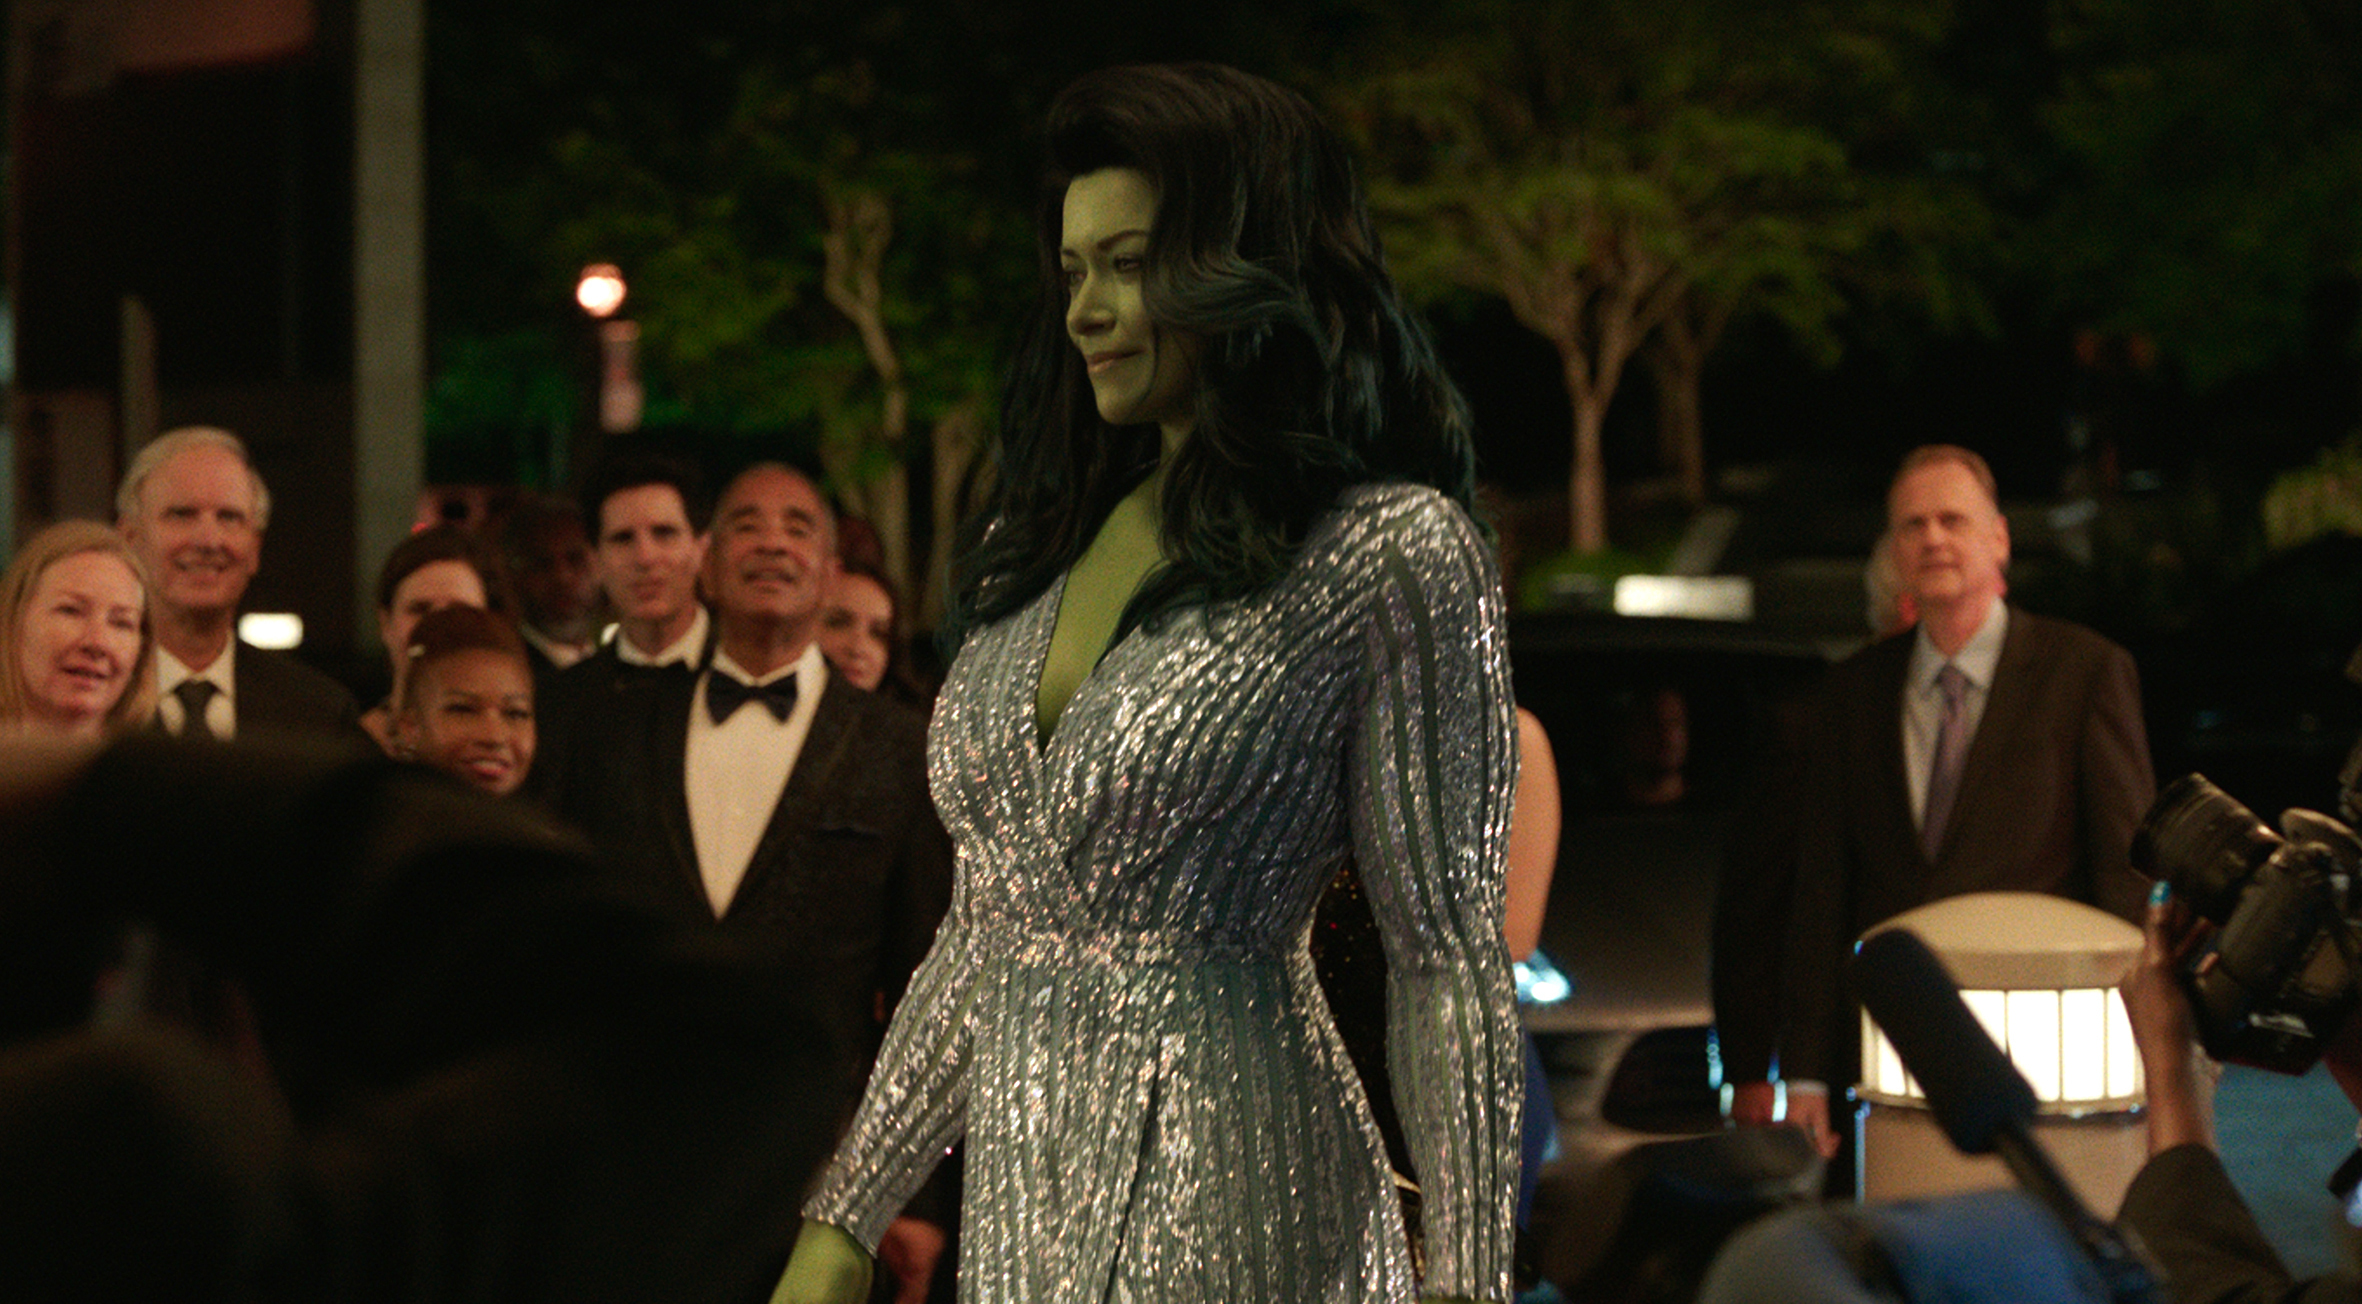 Serie tv She-Hulk: Attorney at Law, Tatiana Maslany parla del personaggio della Marvel Comics